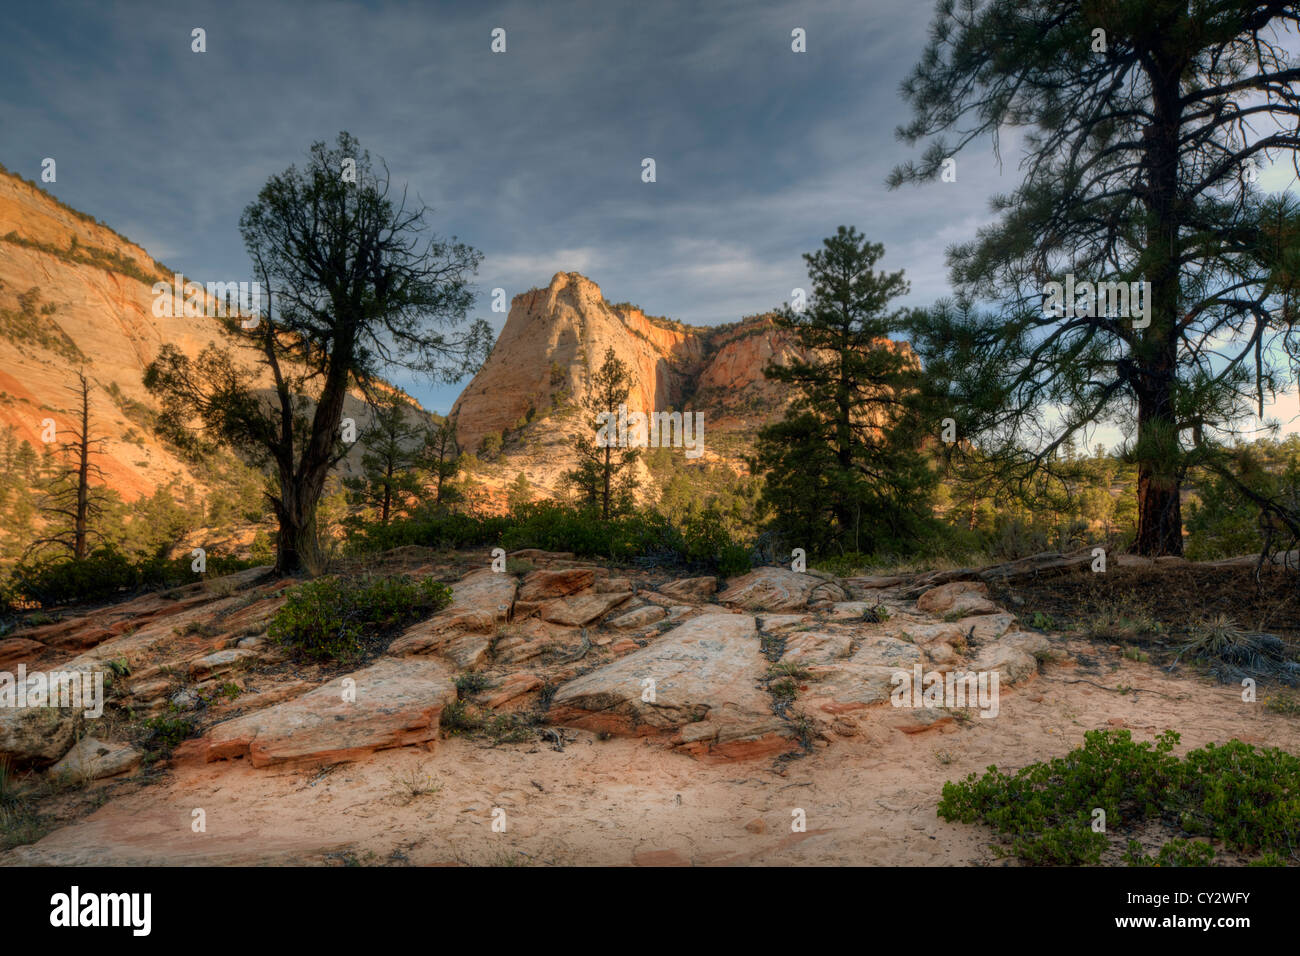 Zion National Park est situé dans le sud-ouest des États-Unis, près de Springdale, en Utah rock formations Banque D'Images